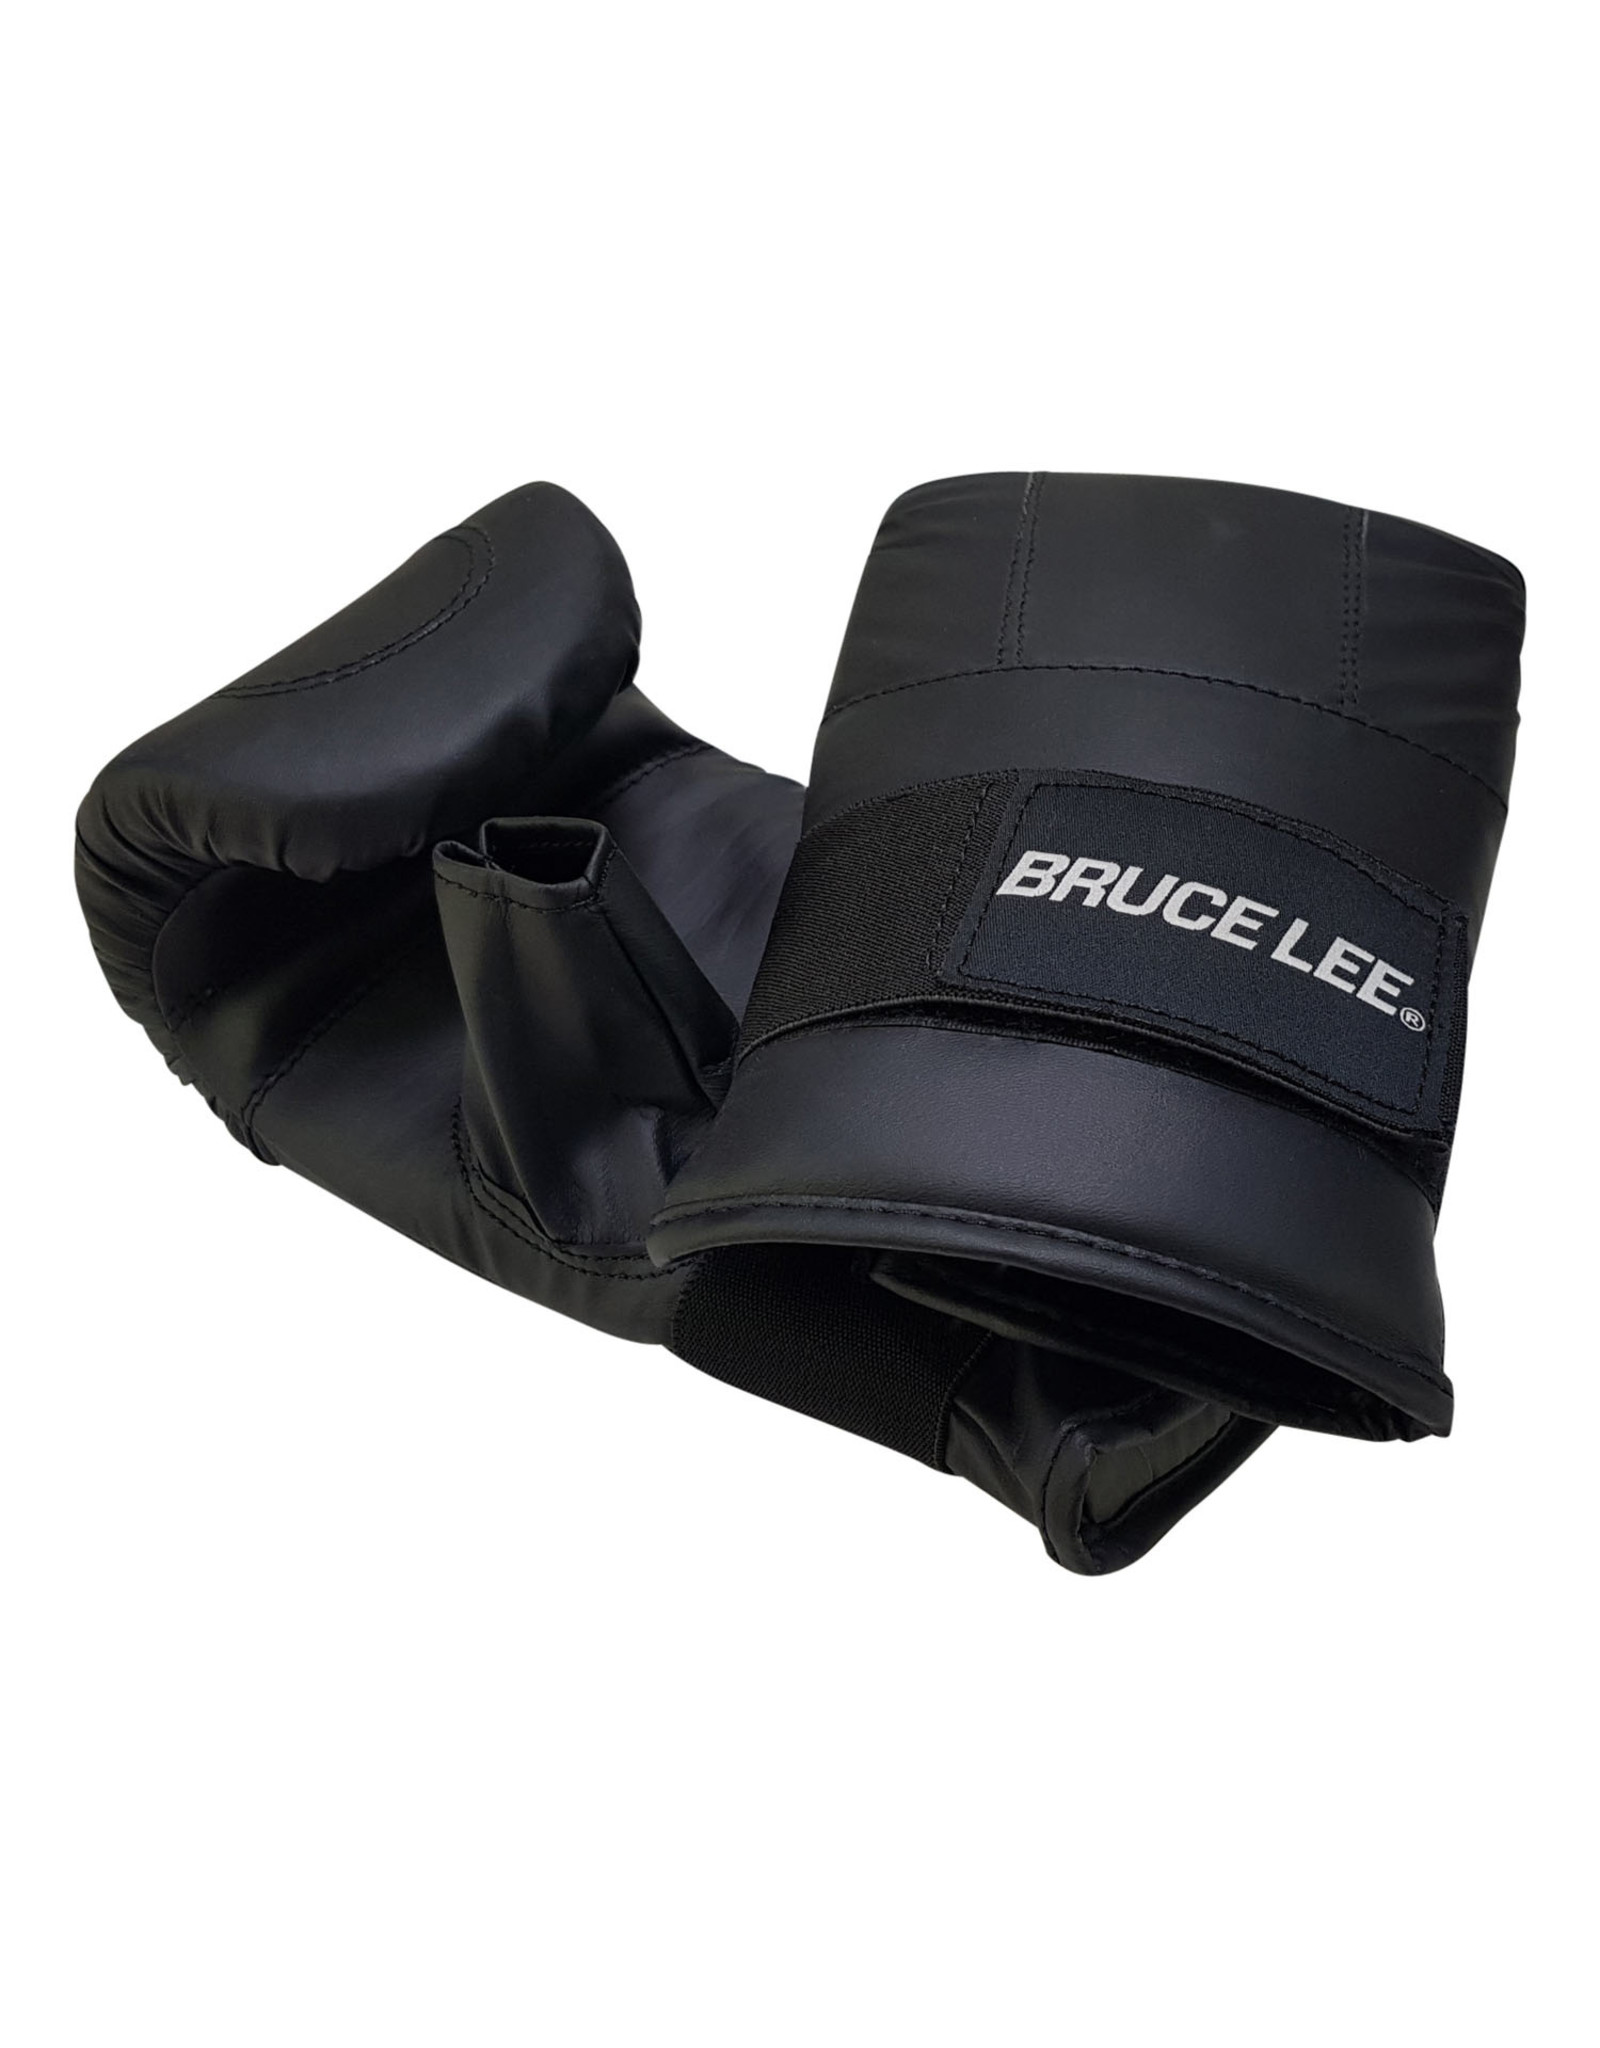 Bruce Lee Bruce Lee Allround Bag Gloves Senior